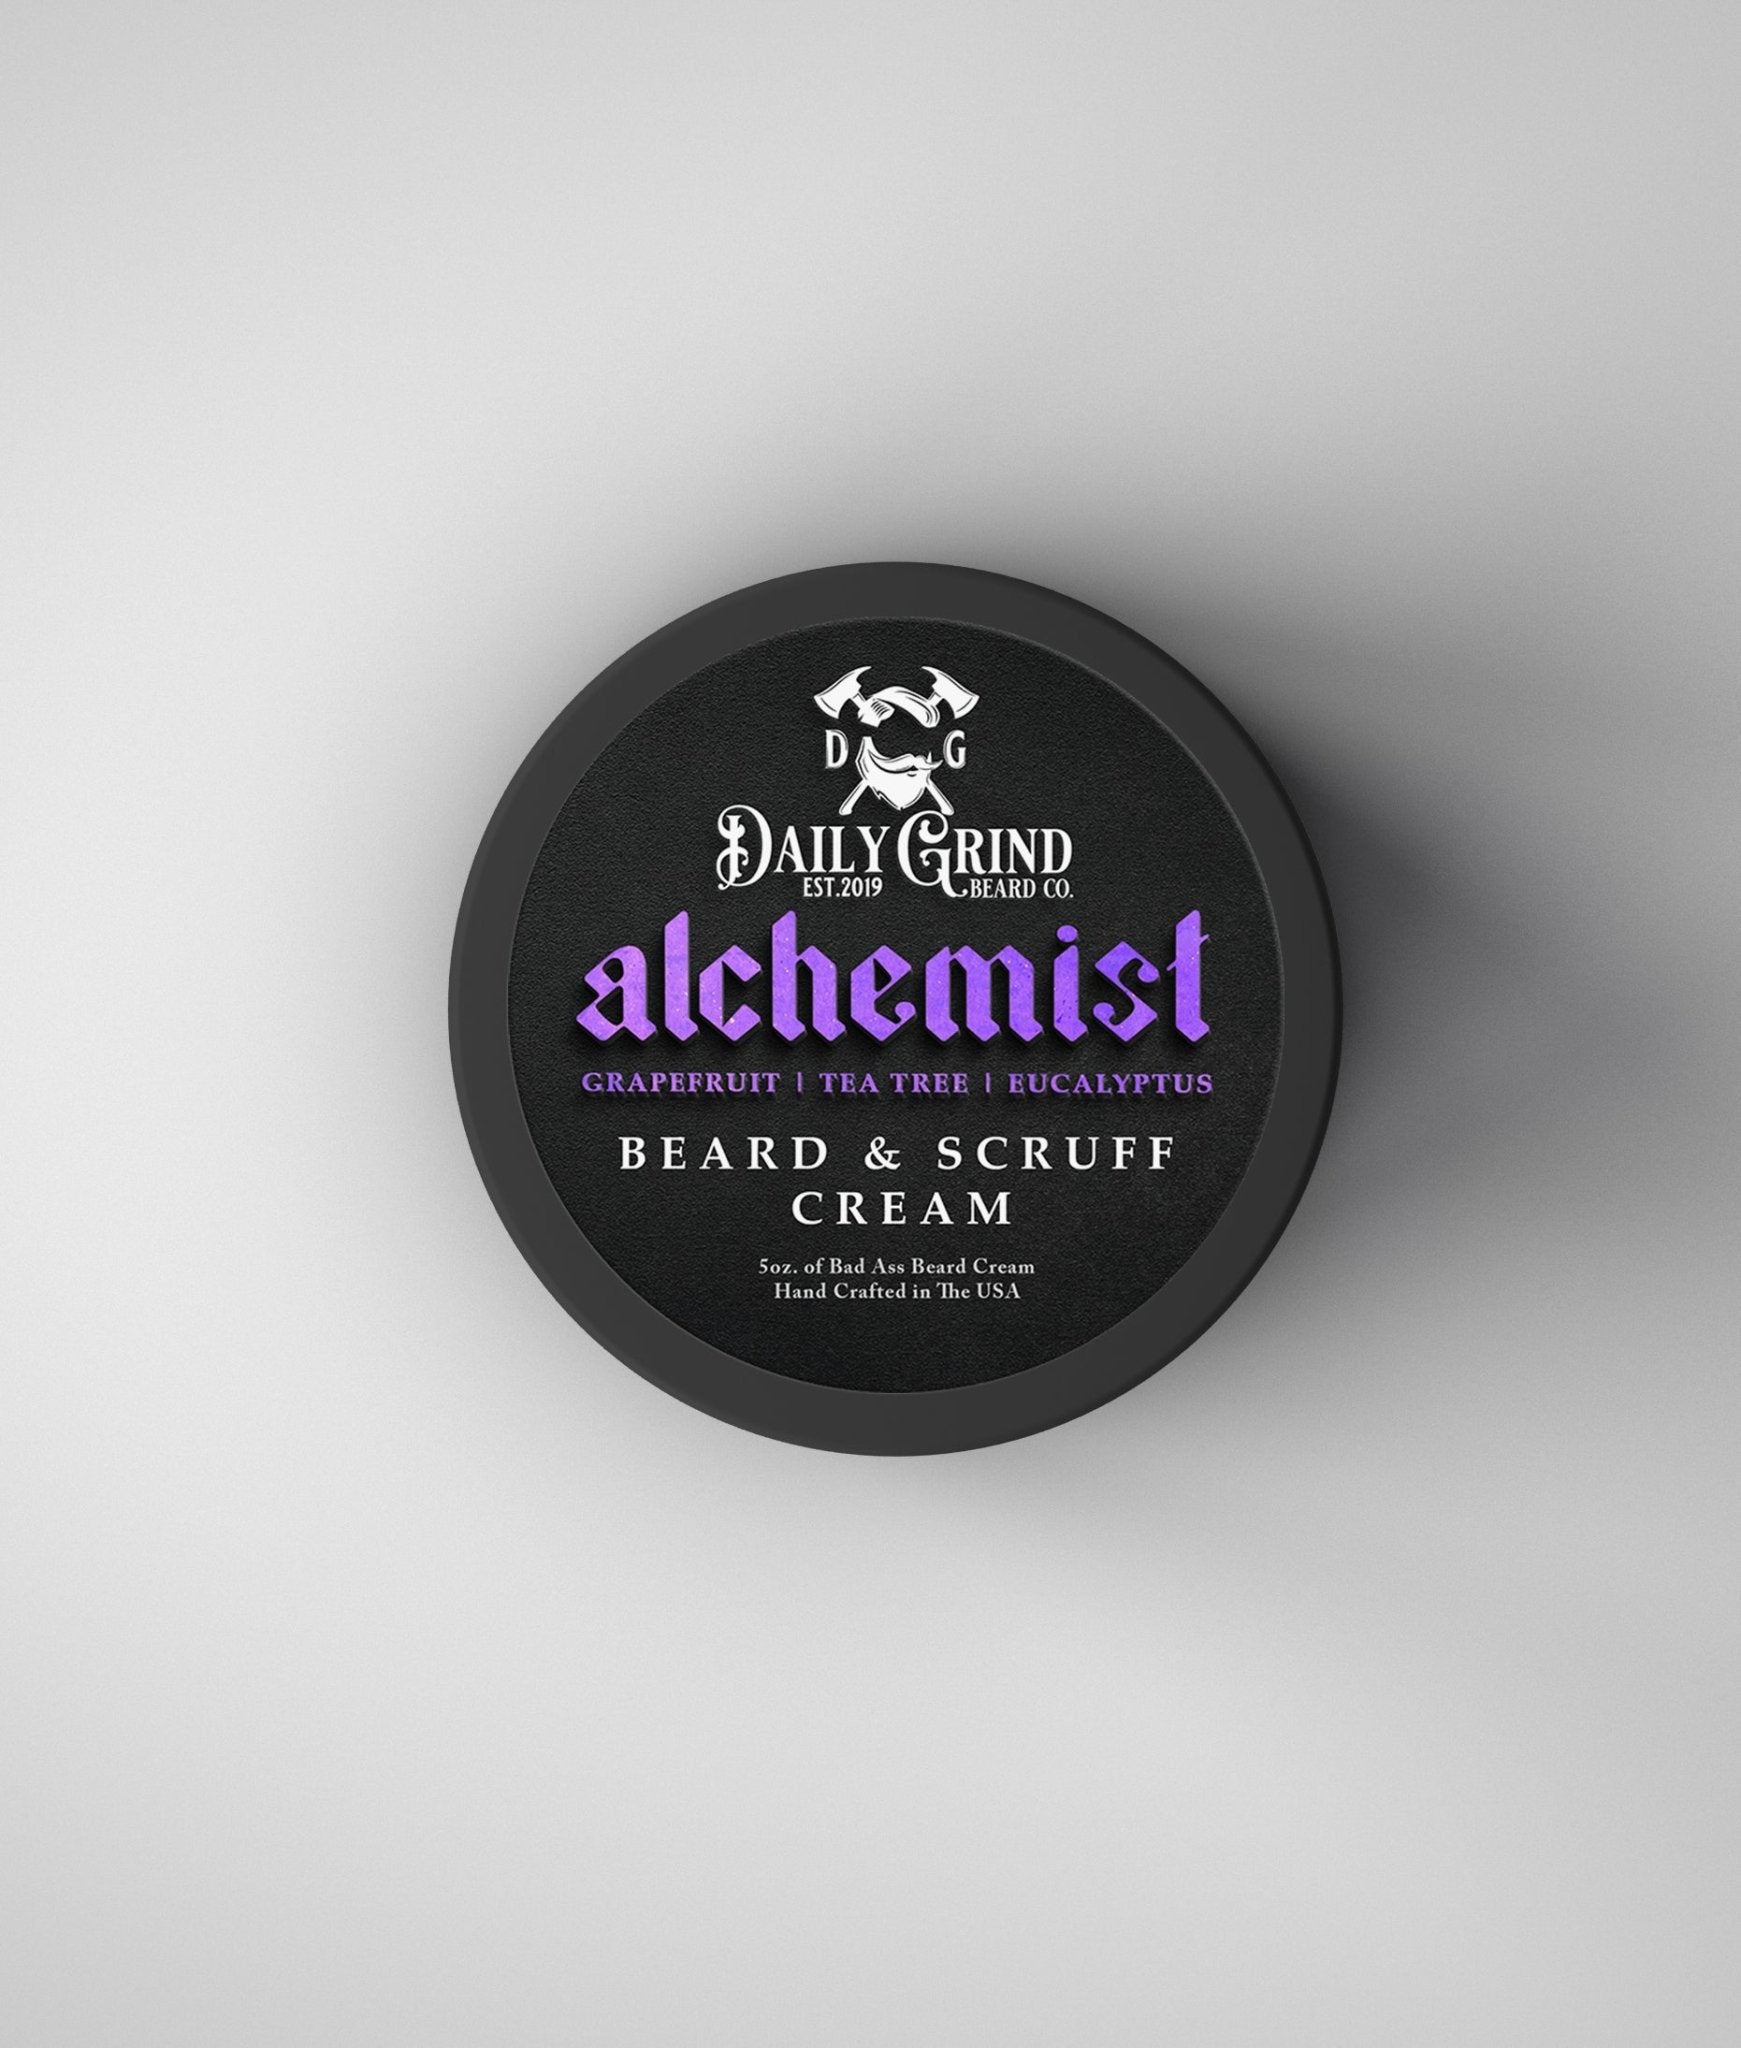 Alchemist - Grapefruit, Tea Tree, Eucalyptus, Beard & Scruff Cream - Daily Grind